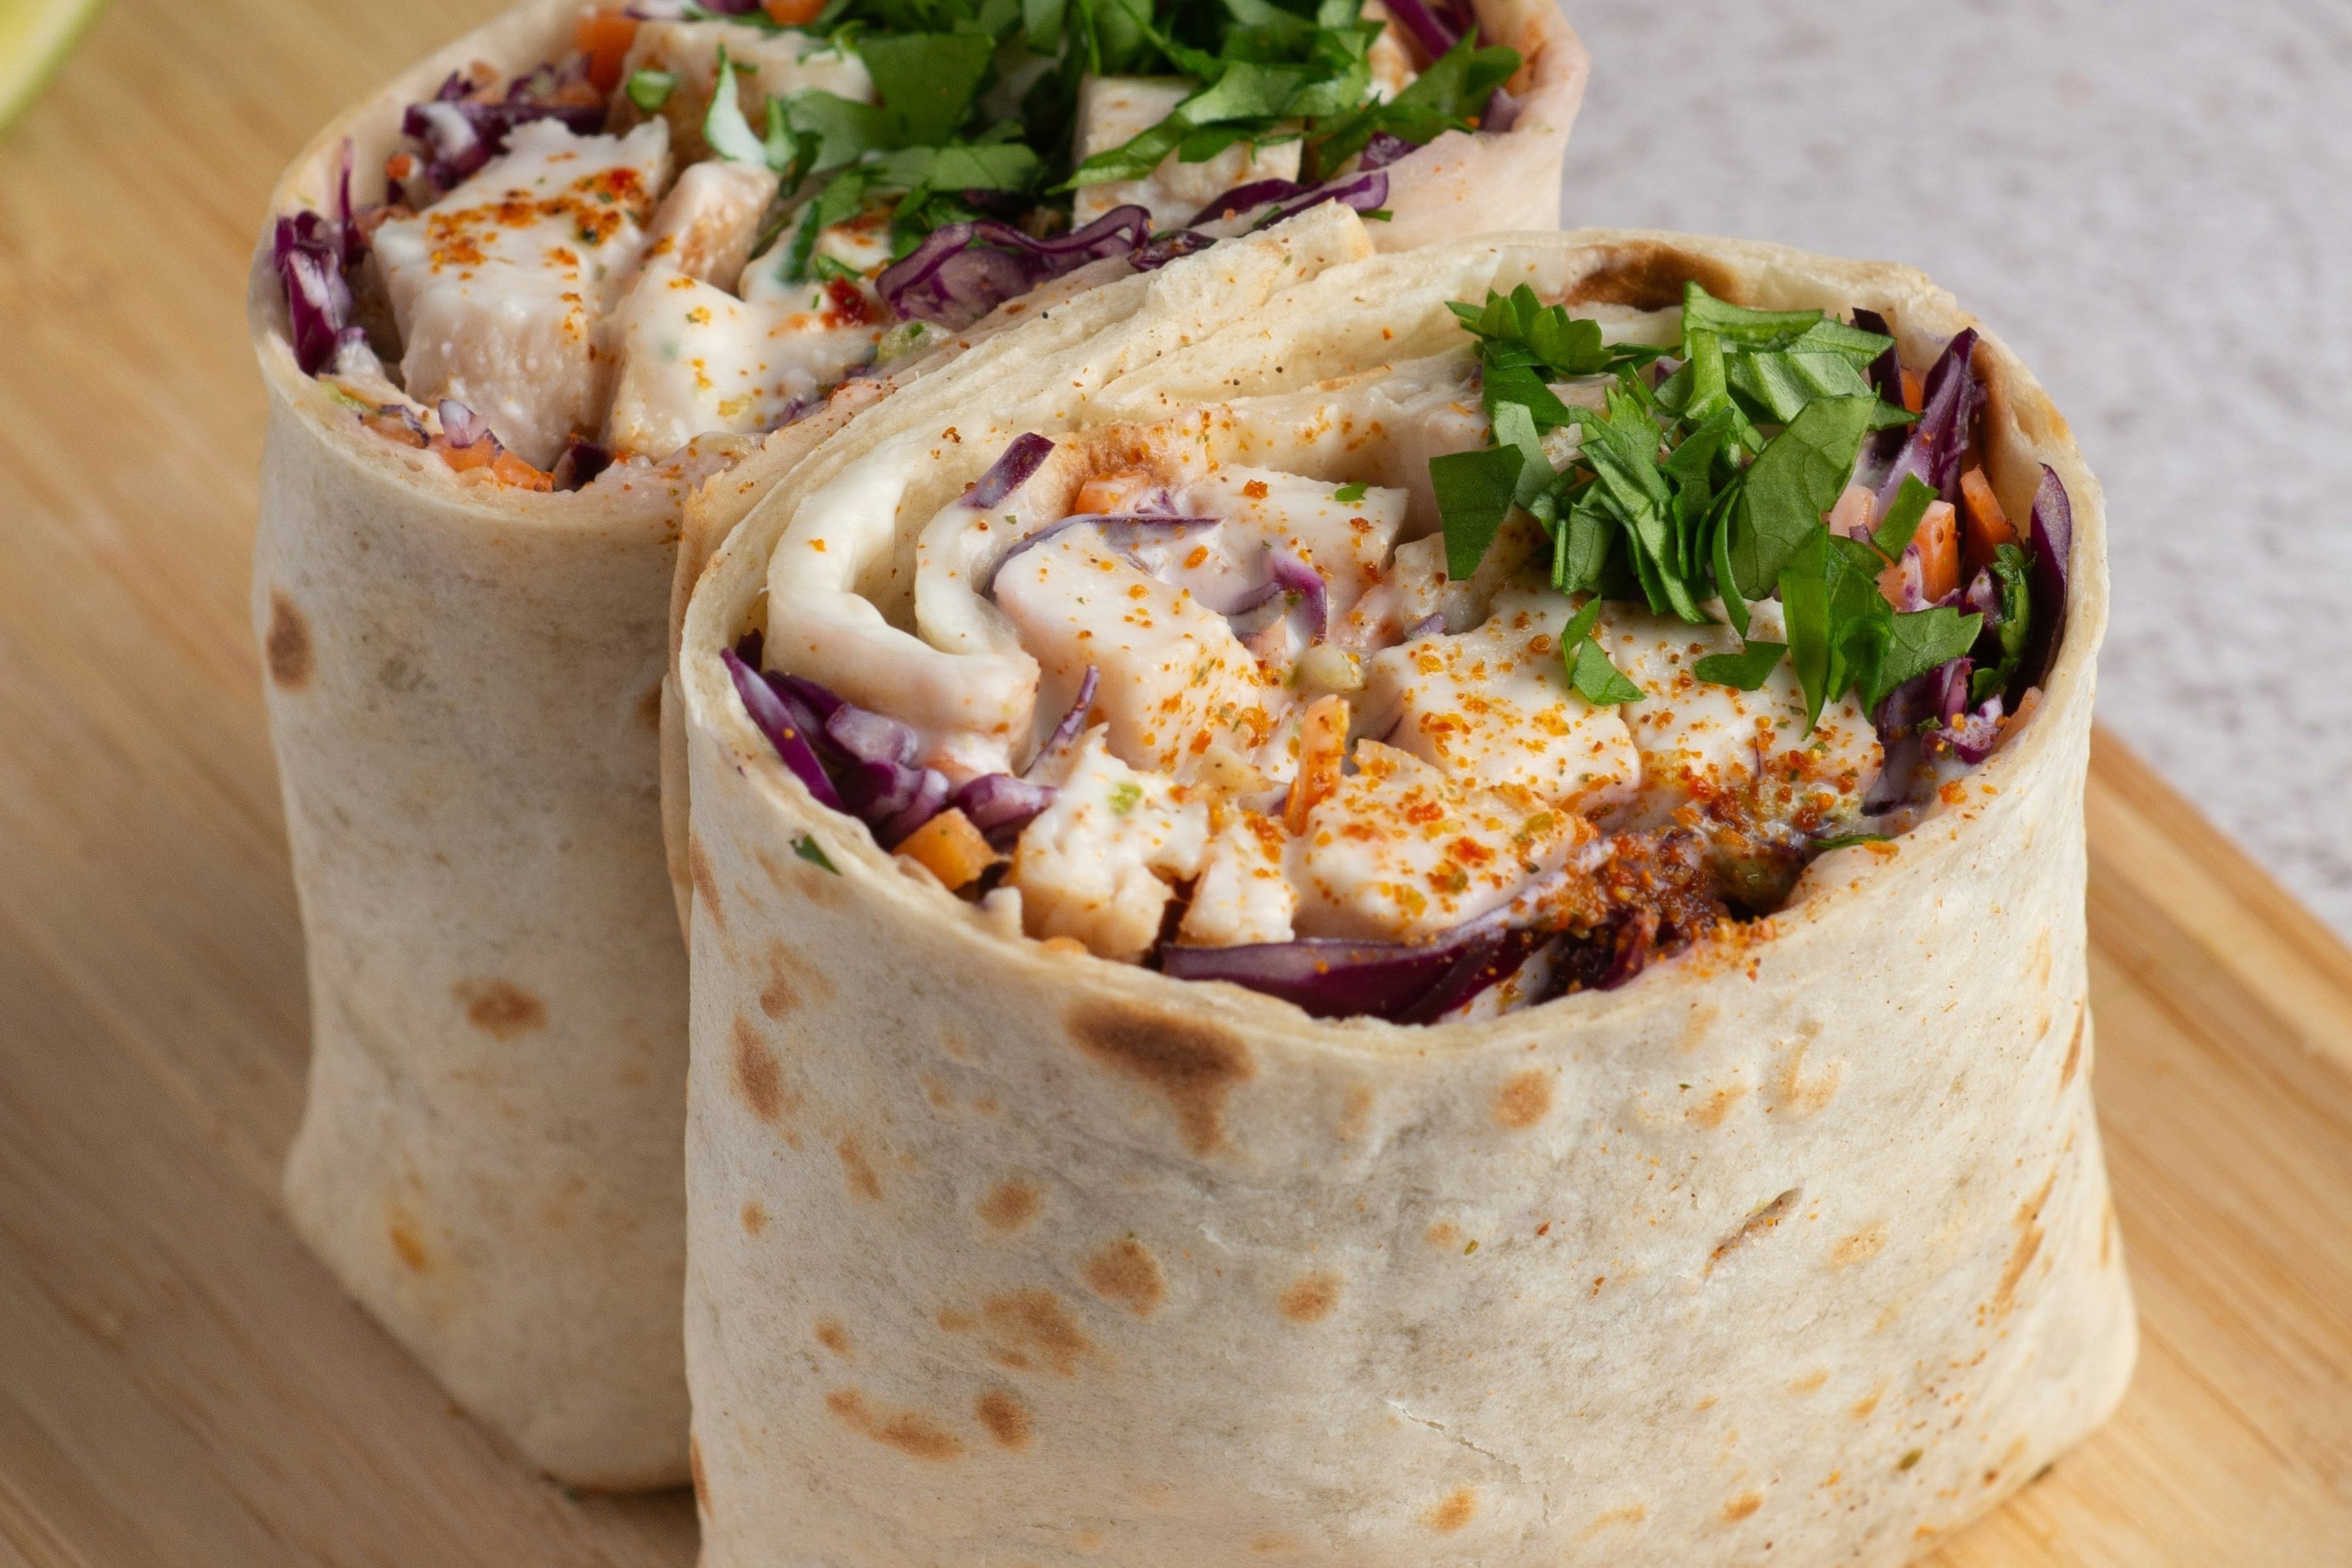 Shared Lunch - Vegetarian Burrito